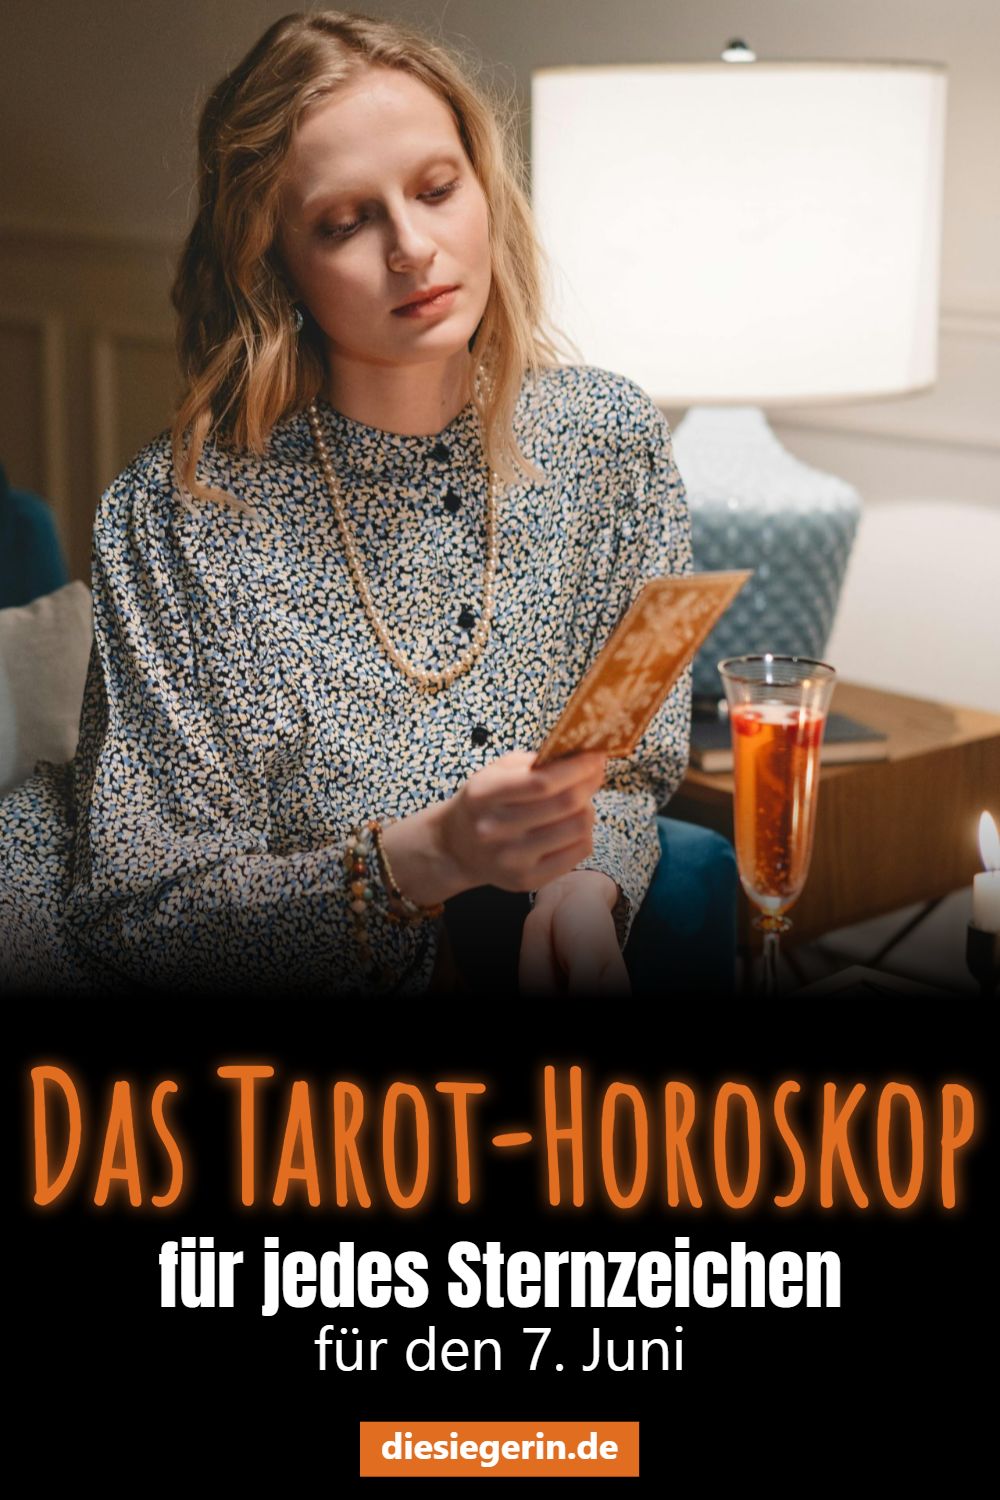 Das Tarot-Horoskop für jedes Sternzeichen für den 7. Juni